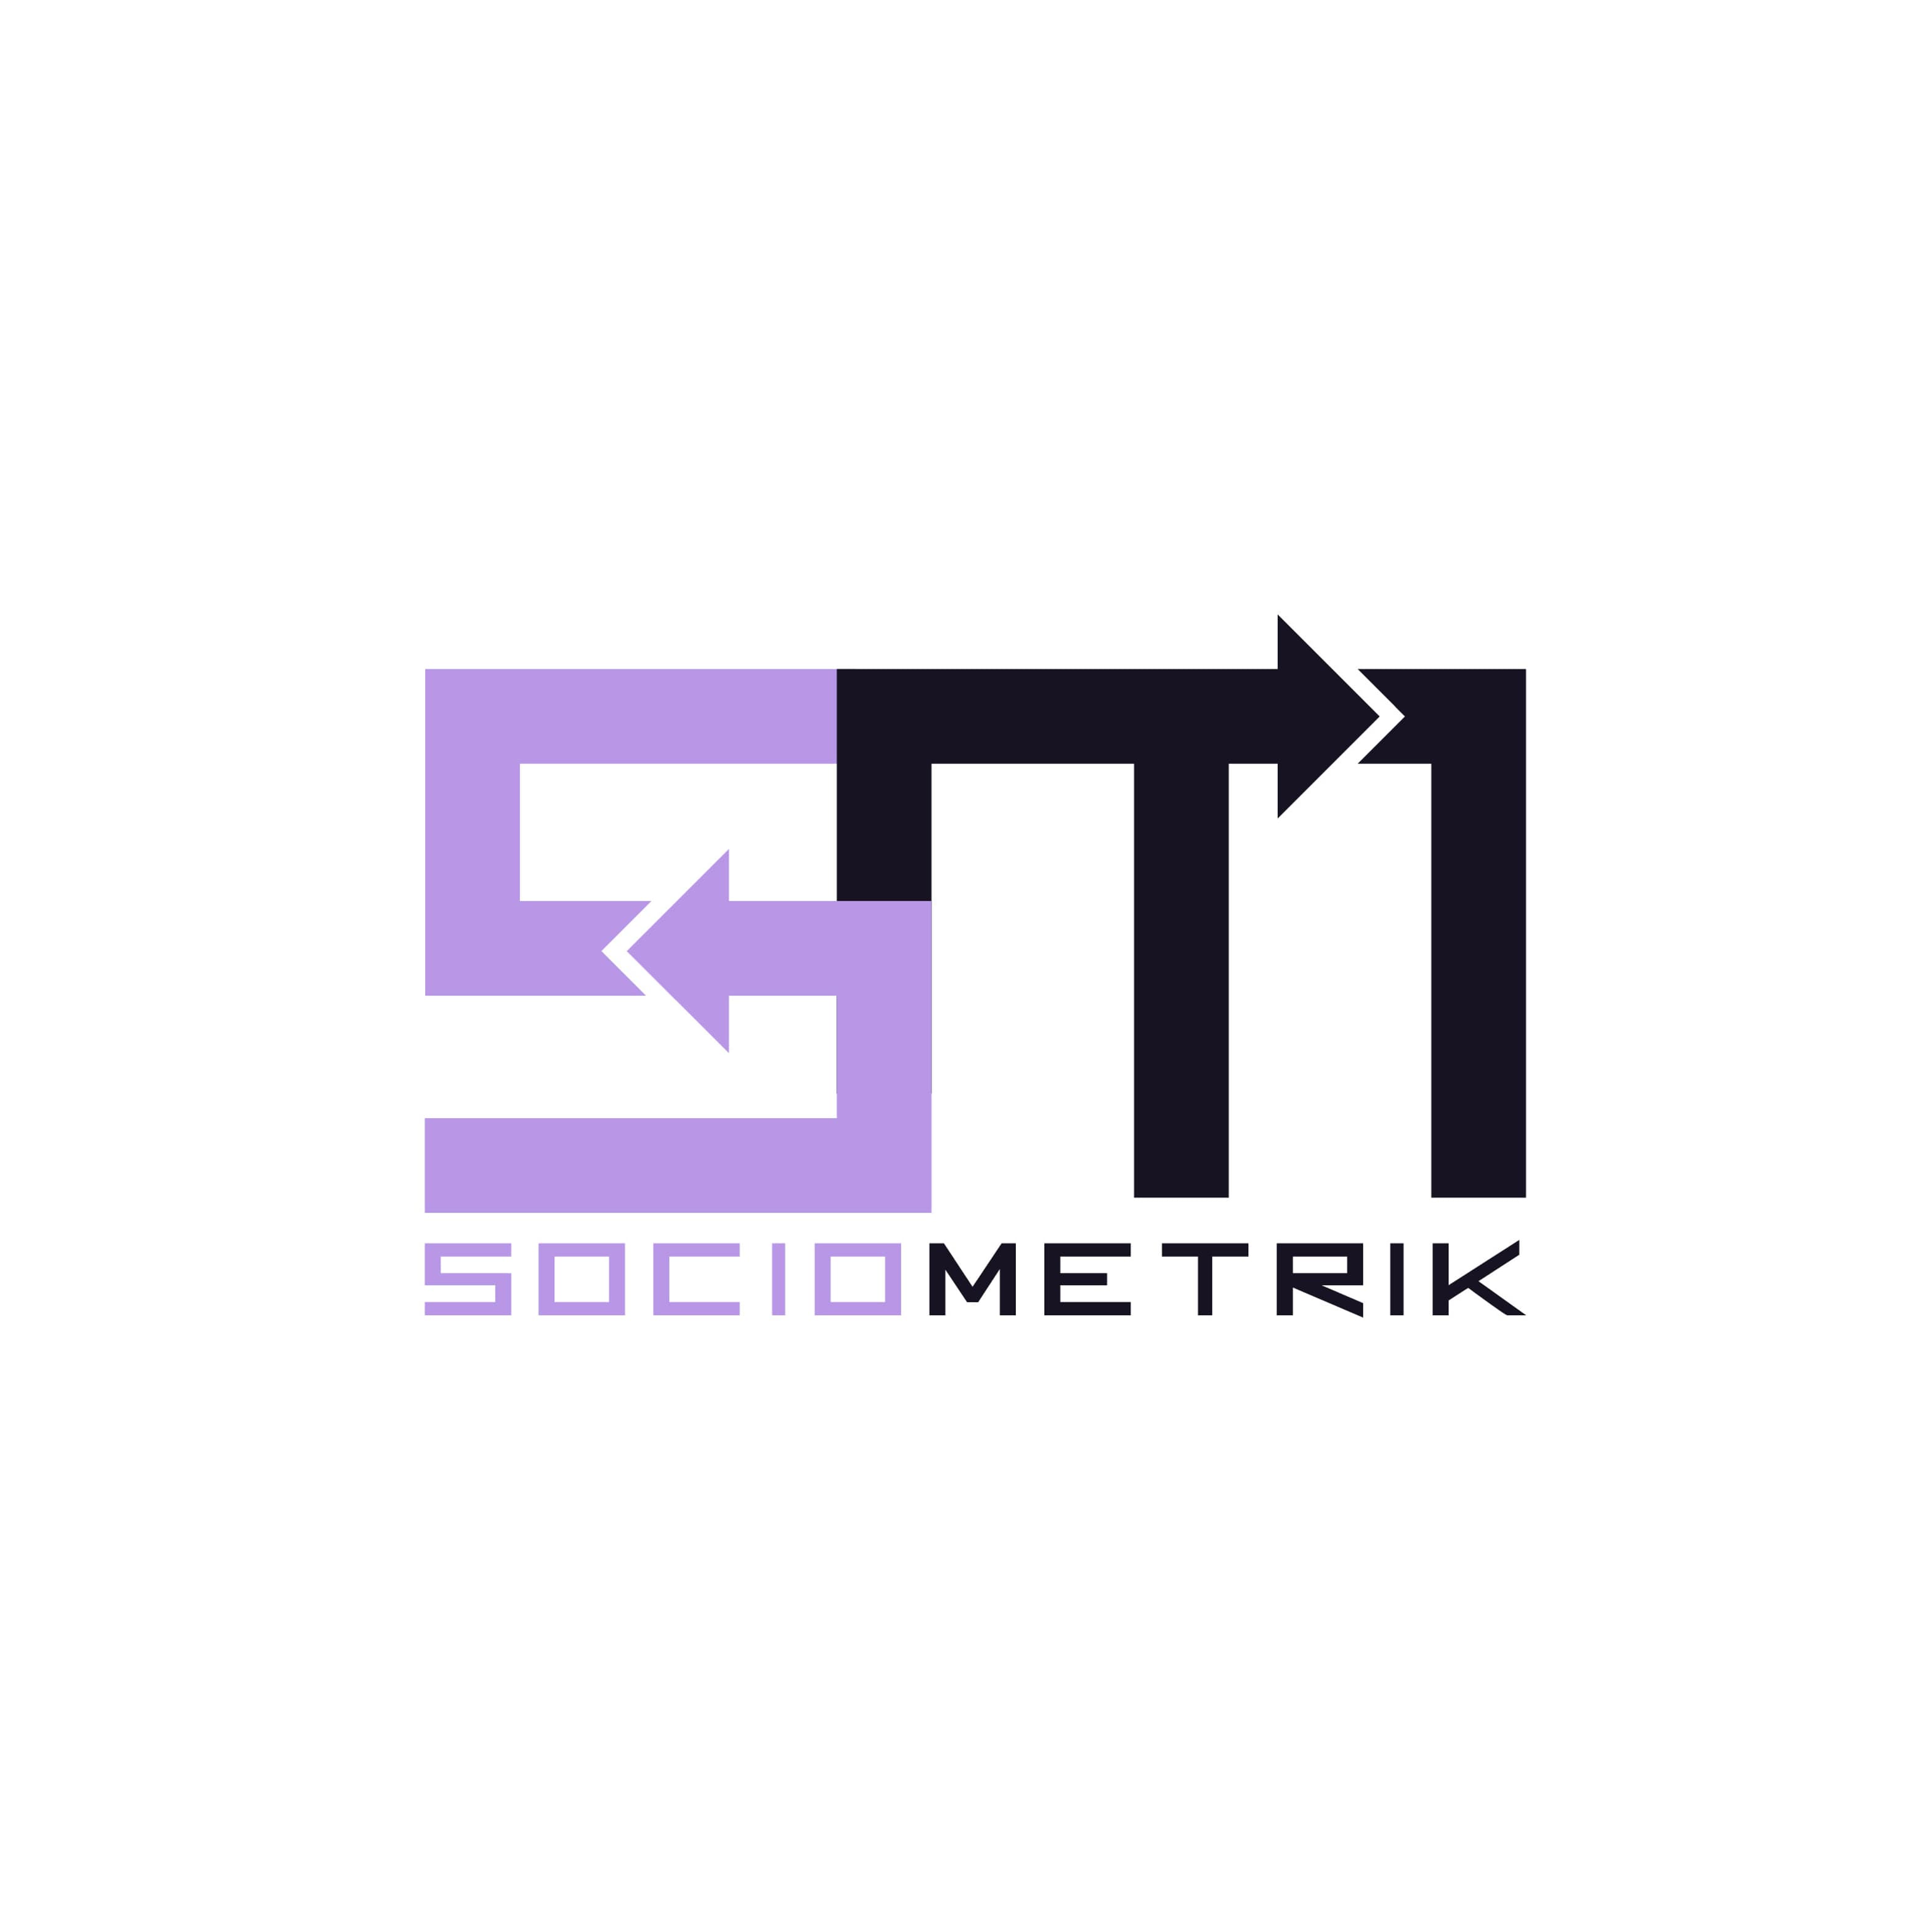 Sociometrik's logo